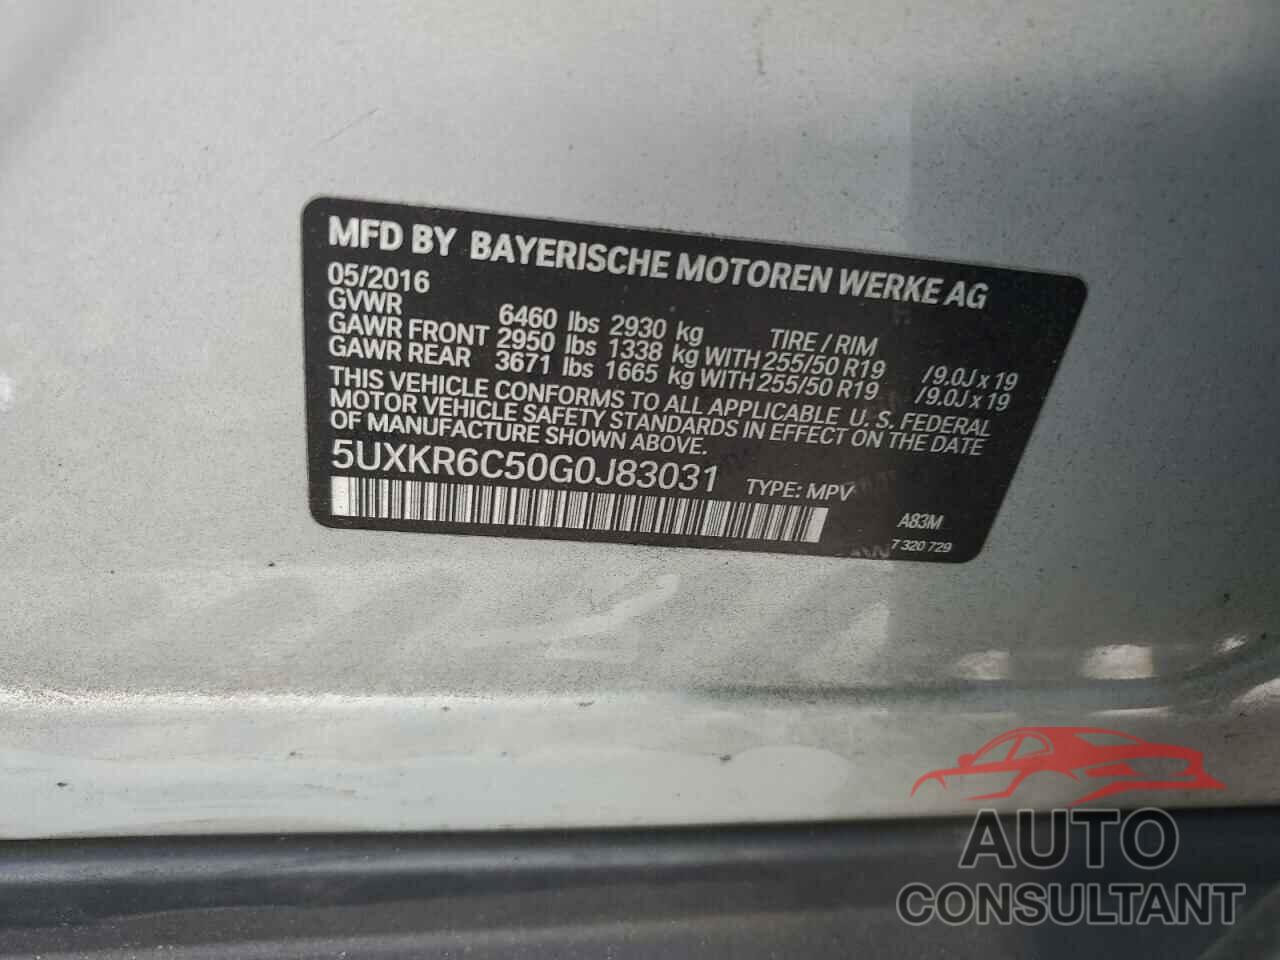 BMW X5 2016 - 5UXKR6C50G0J83031